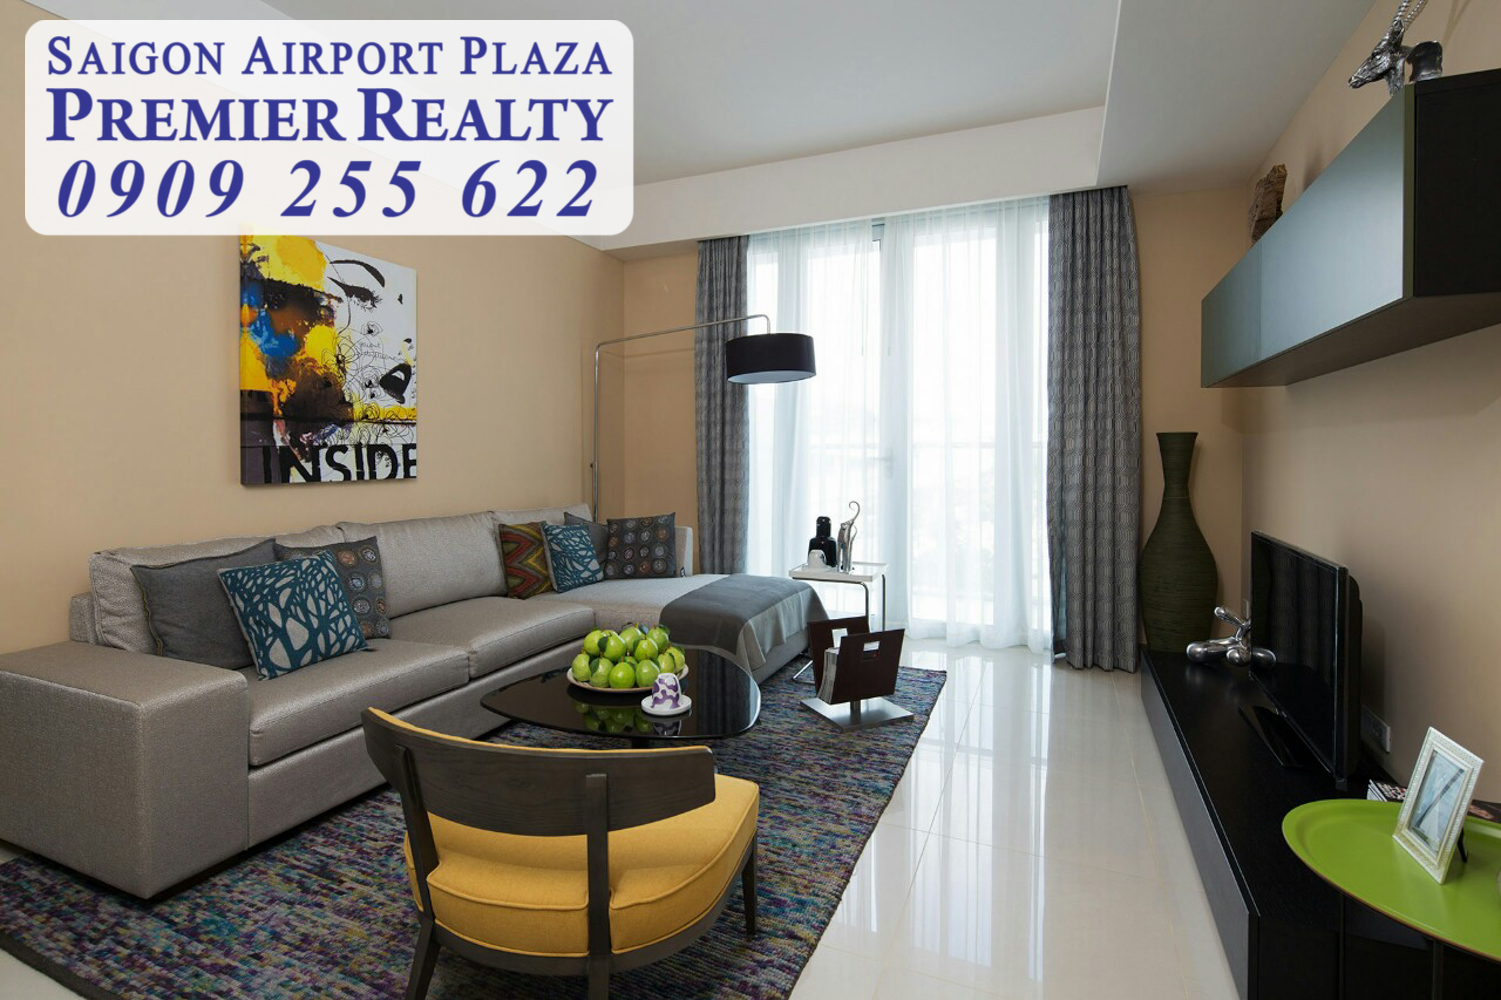 Cho thuê căn hộ chung cư SAIGON AIRPORT PLAZA 2PN diện tích 95m2 chỉ 16,5 triệu full nội thất đầy đủ cao cấp. Liên hệ hotline PKD: 0909 255 622